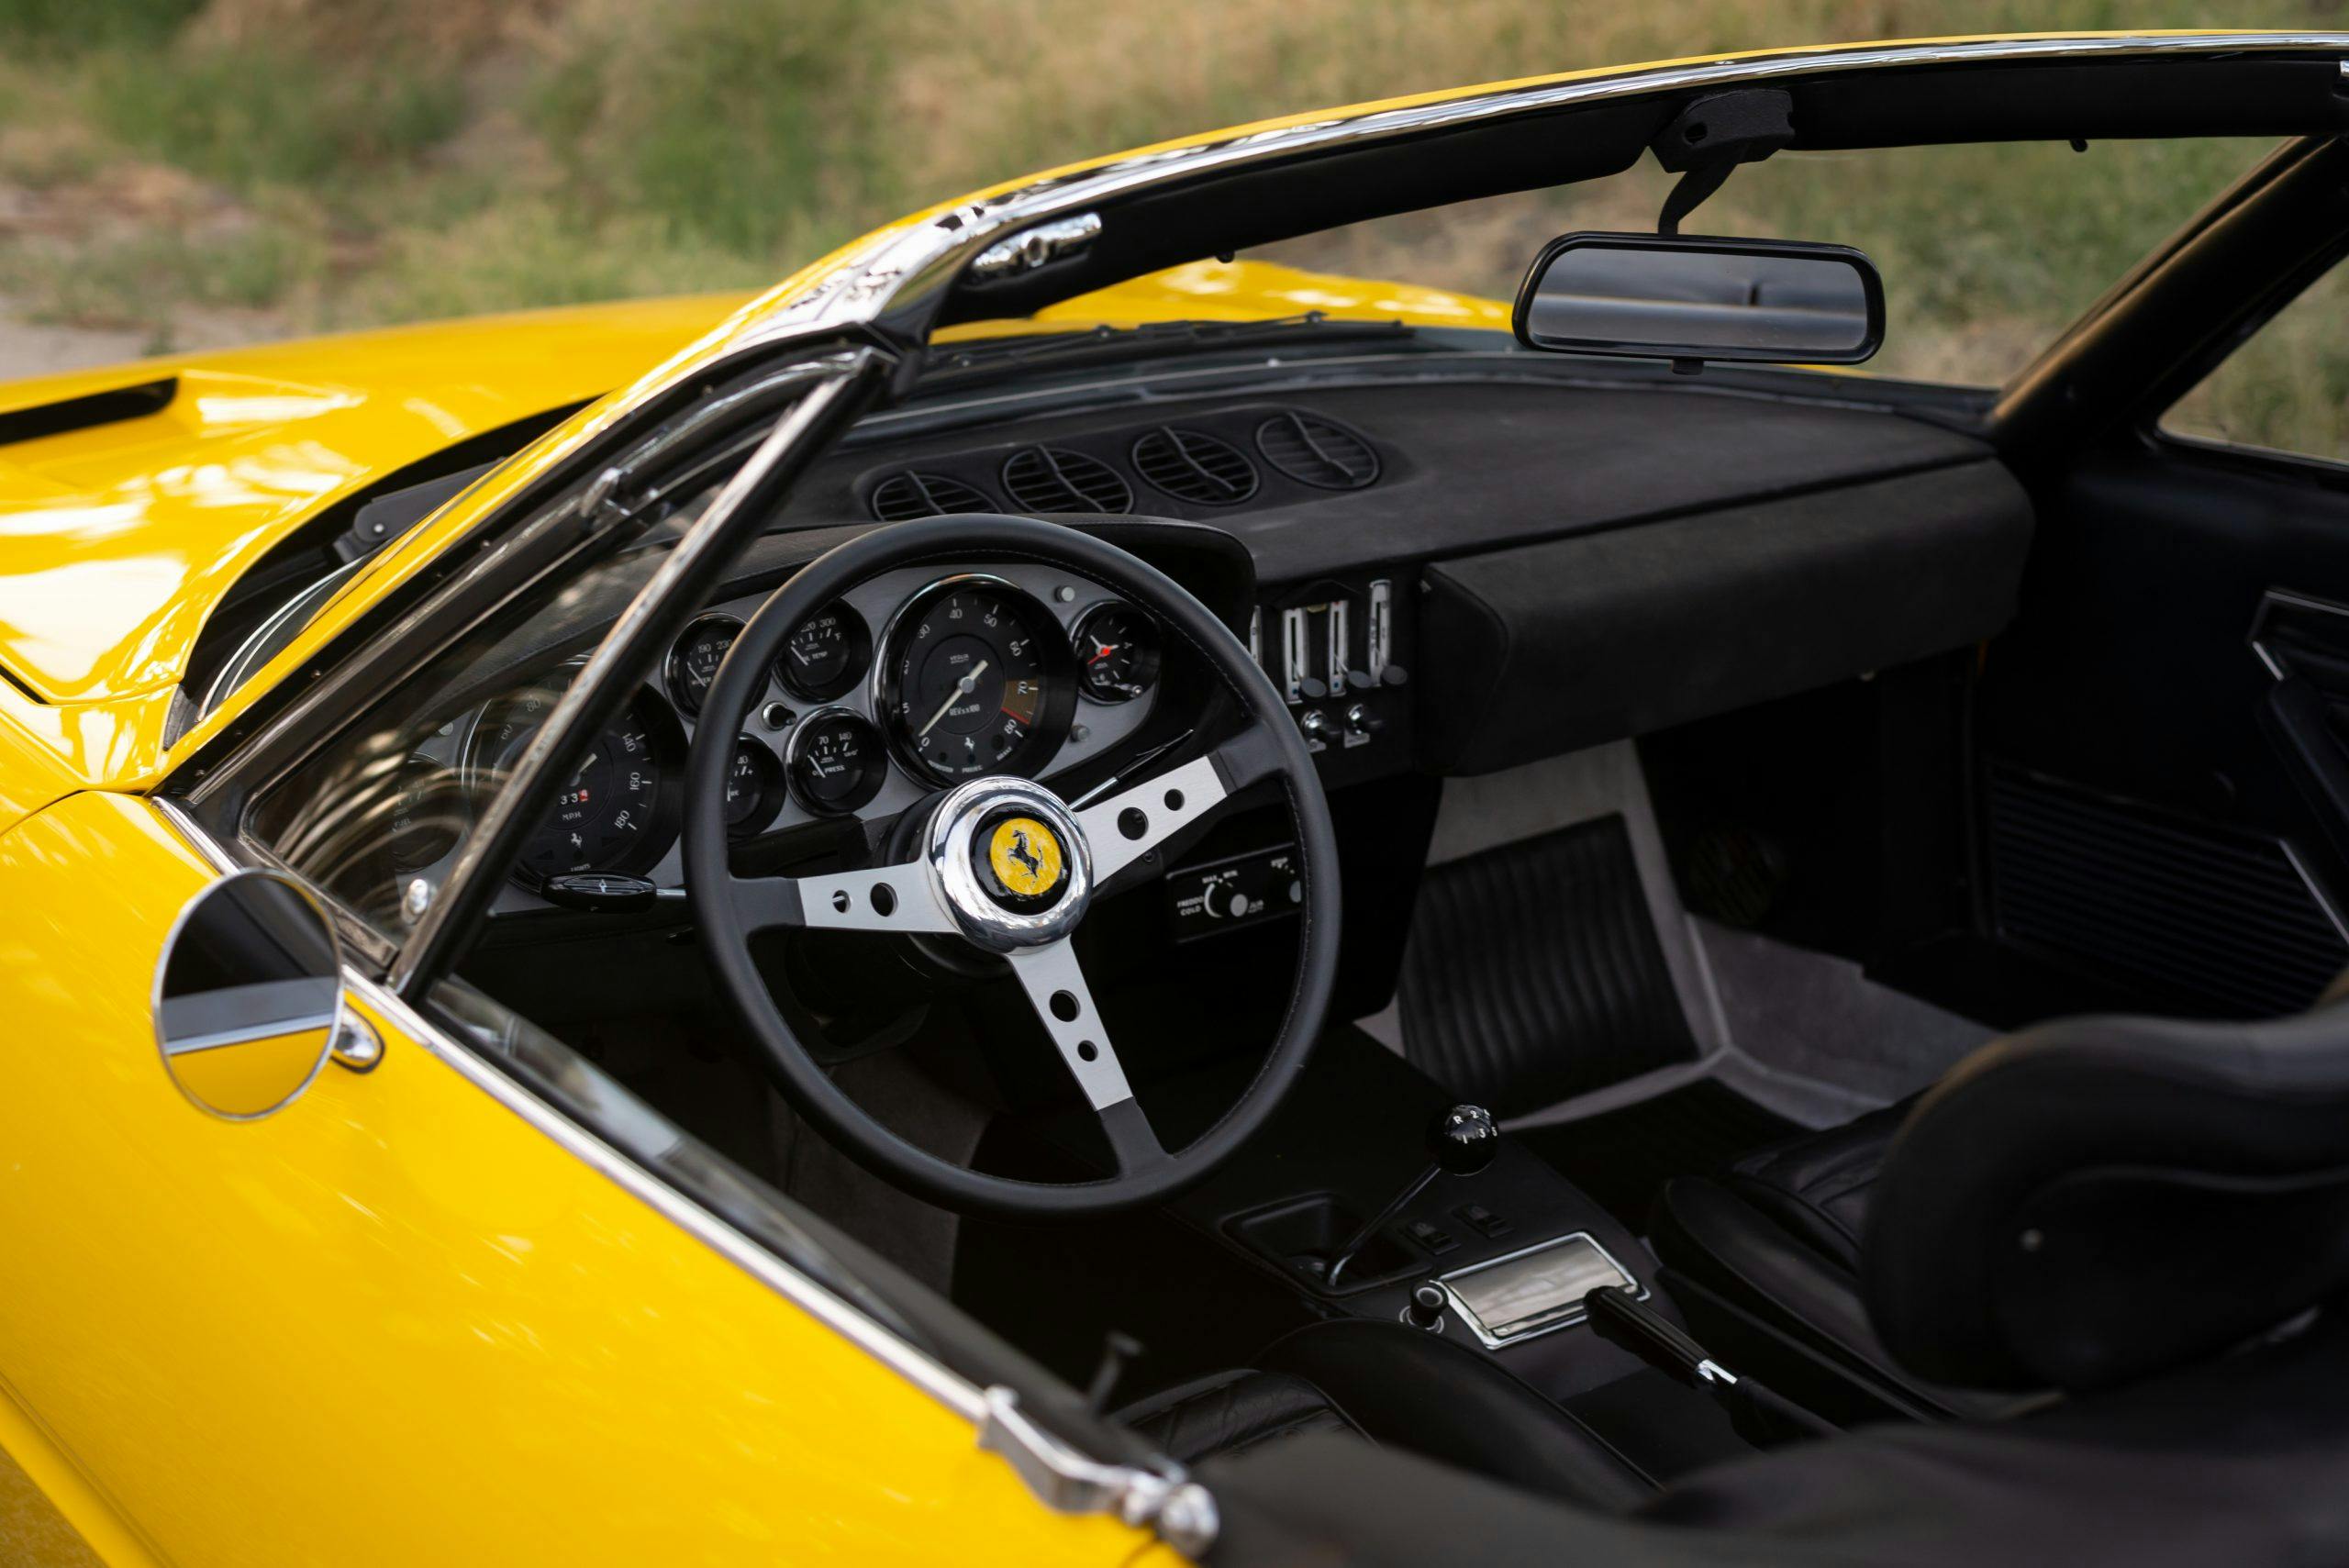 1971 Ferrari 365 interior